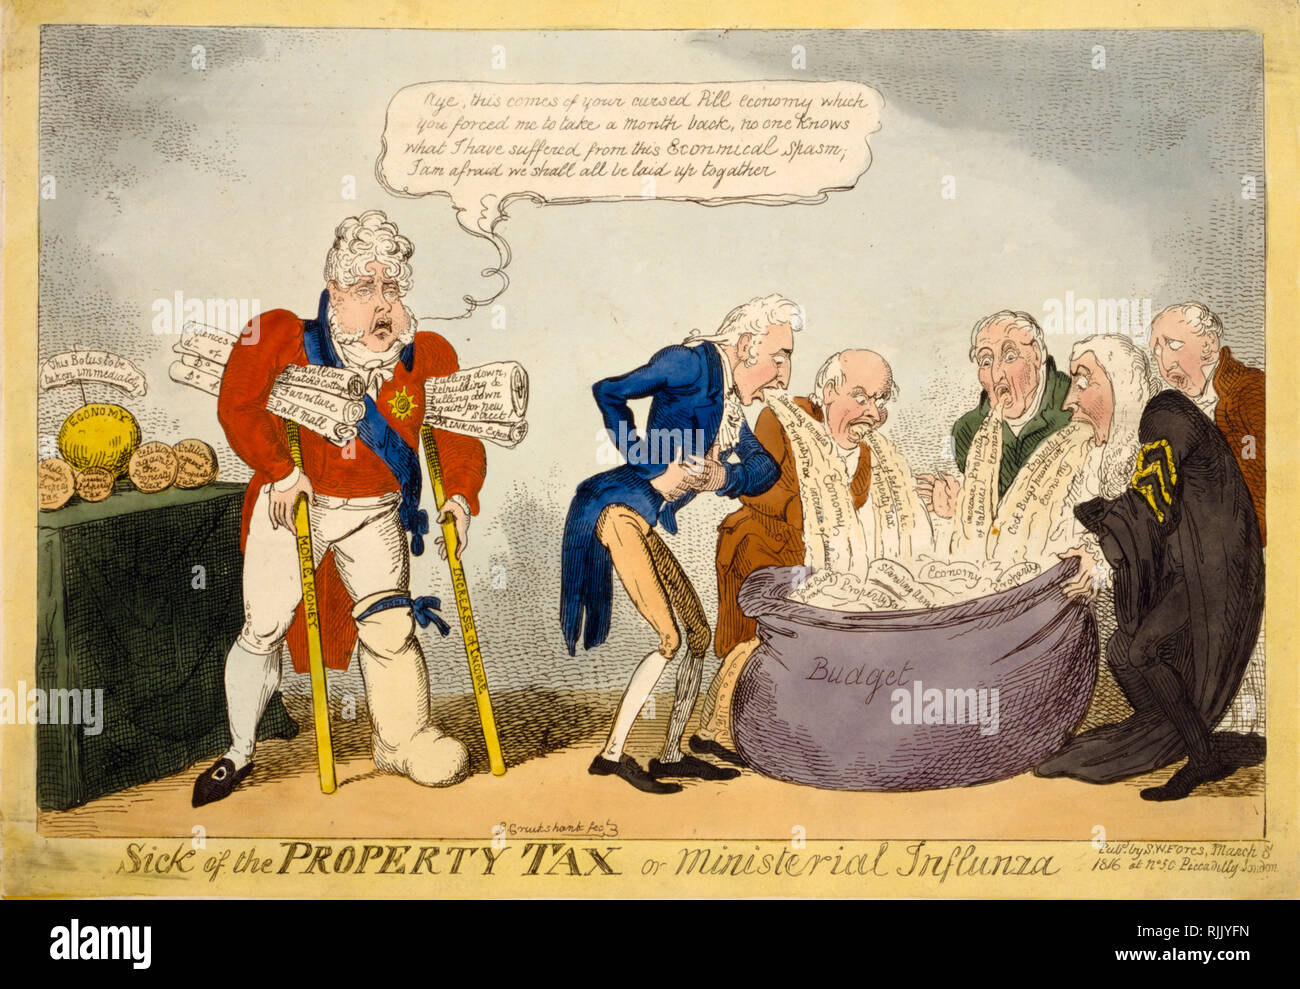 Britische politische Karikatur - George Cruikshank 1816 - "krank von der Grundsteuer oder ministeriellen influnza (sic)"-Politik Stockfoto